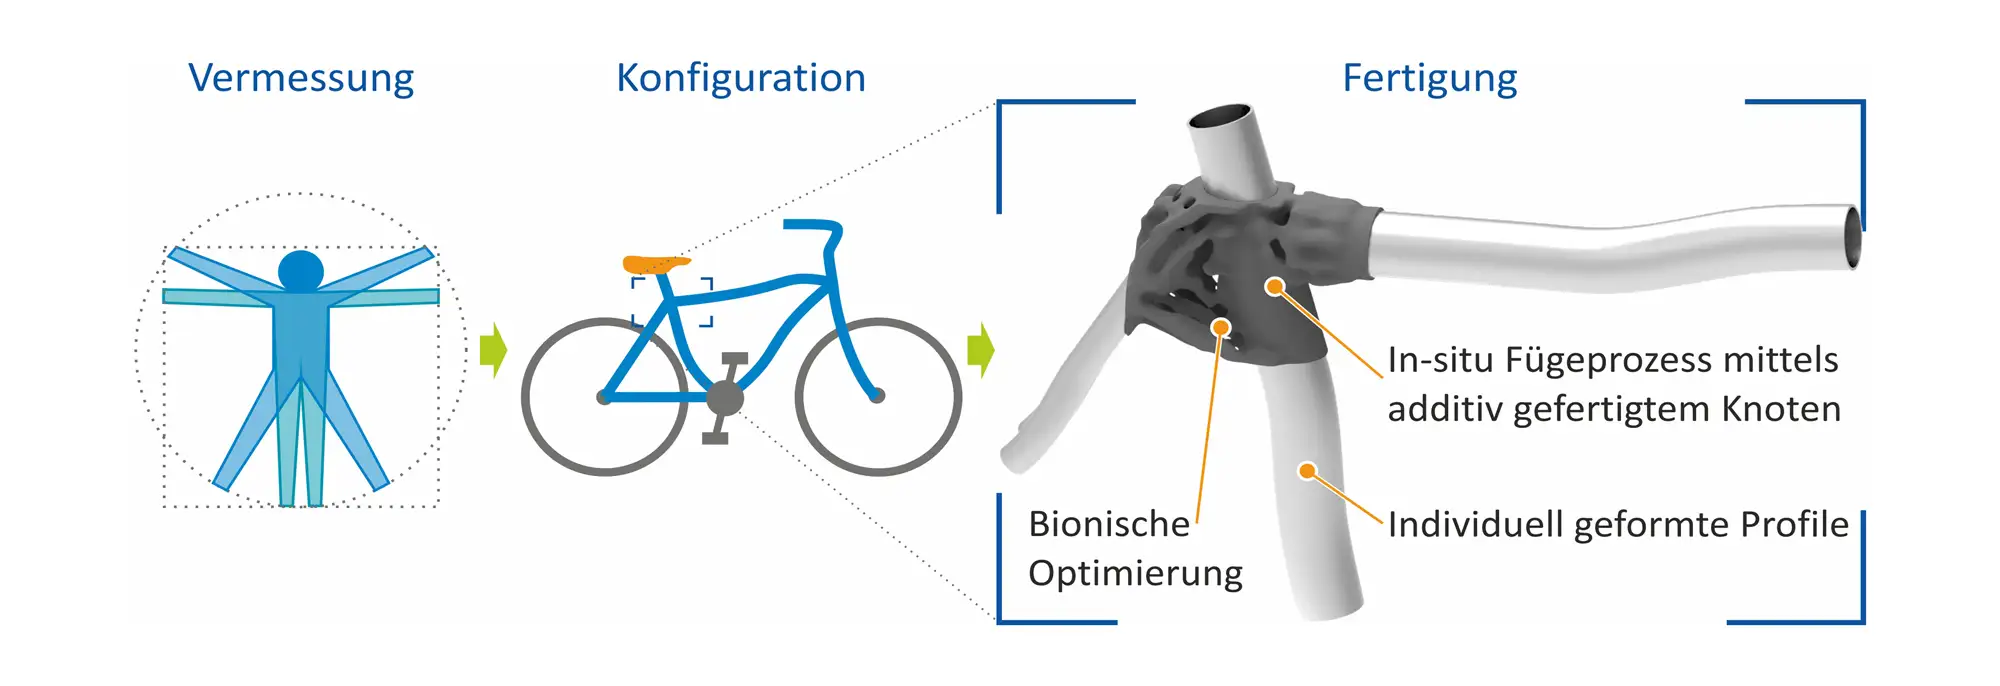 Vermessung
Konfiguration
Fertigung
In-situ Fügeprozess mittels additiv gefertigtem Knoten
Bionische
Optimierung
•Individuell geformte Profile